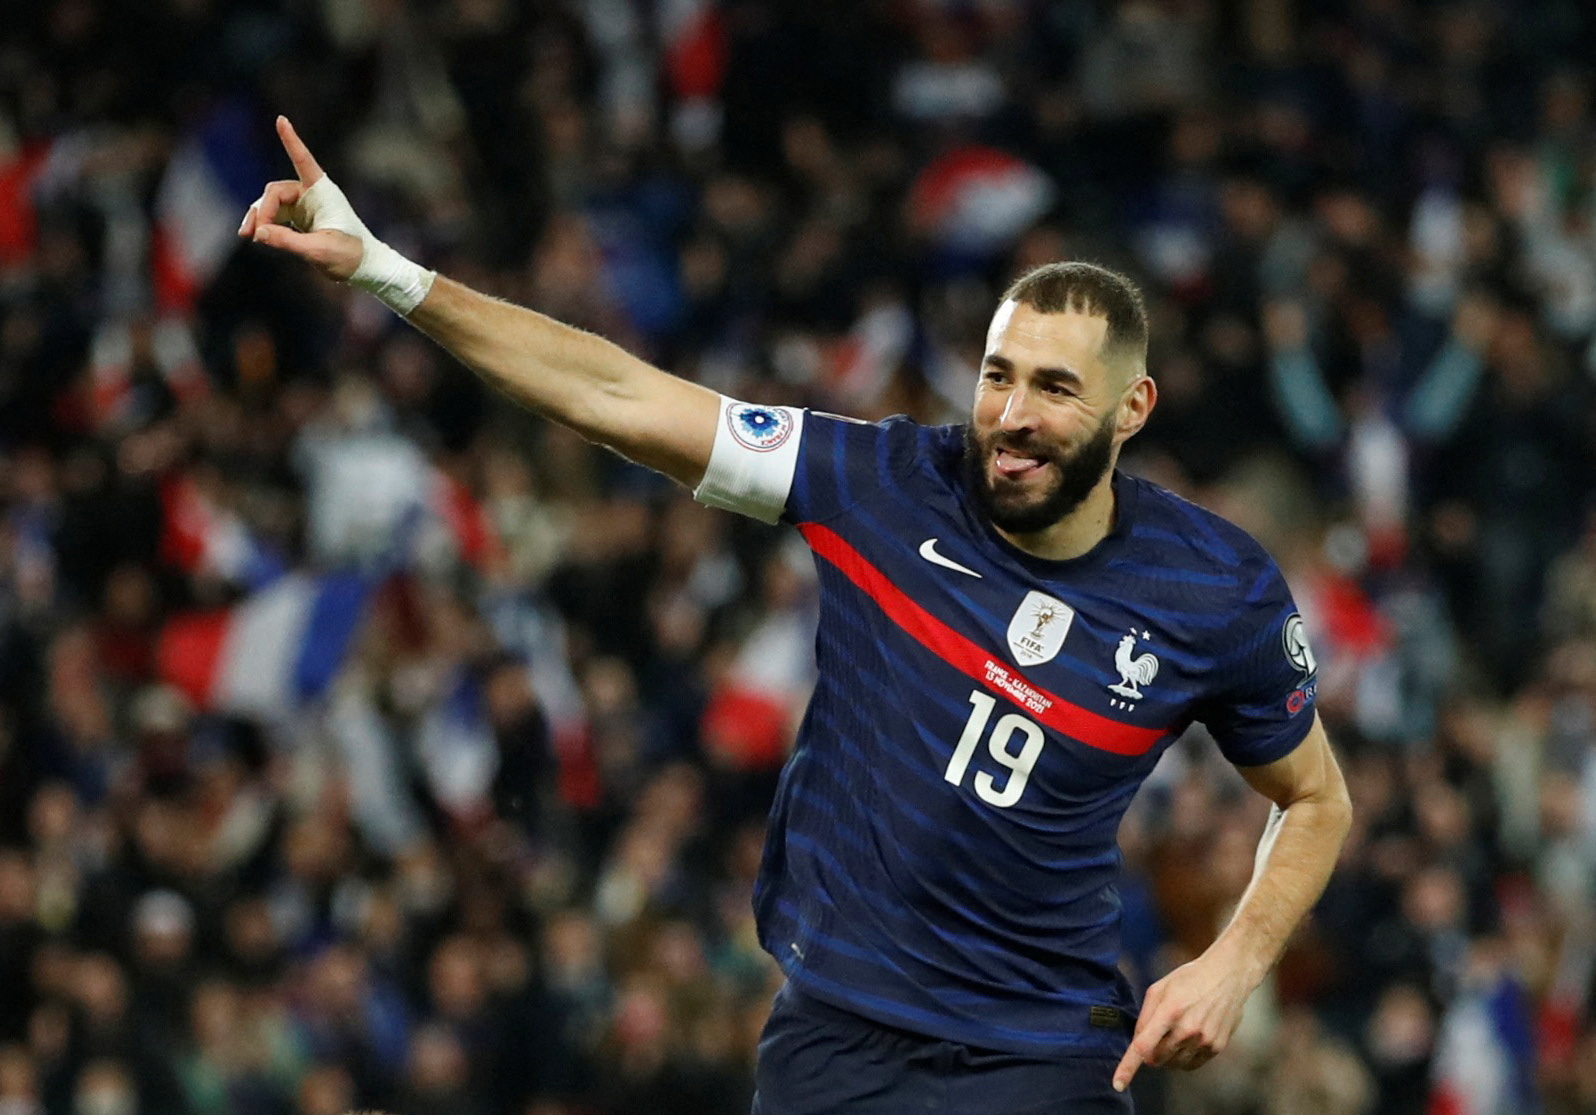 Tuyển Pháp - nhà vô địch World Cup 2018 và là một trong những đội bóng đá hàng đầu thế giới. Hãy cùng hâm mộ và xem hình ảnh về những ngôi sao của đội tuyển Pháp để cảm nhận sự mạnh mẽ và hiệu quả trên sân cỏ.